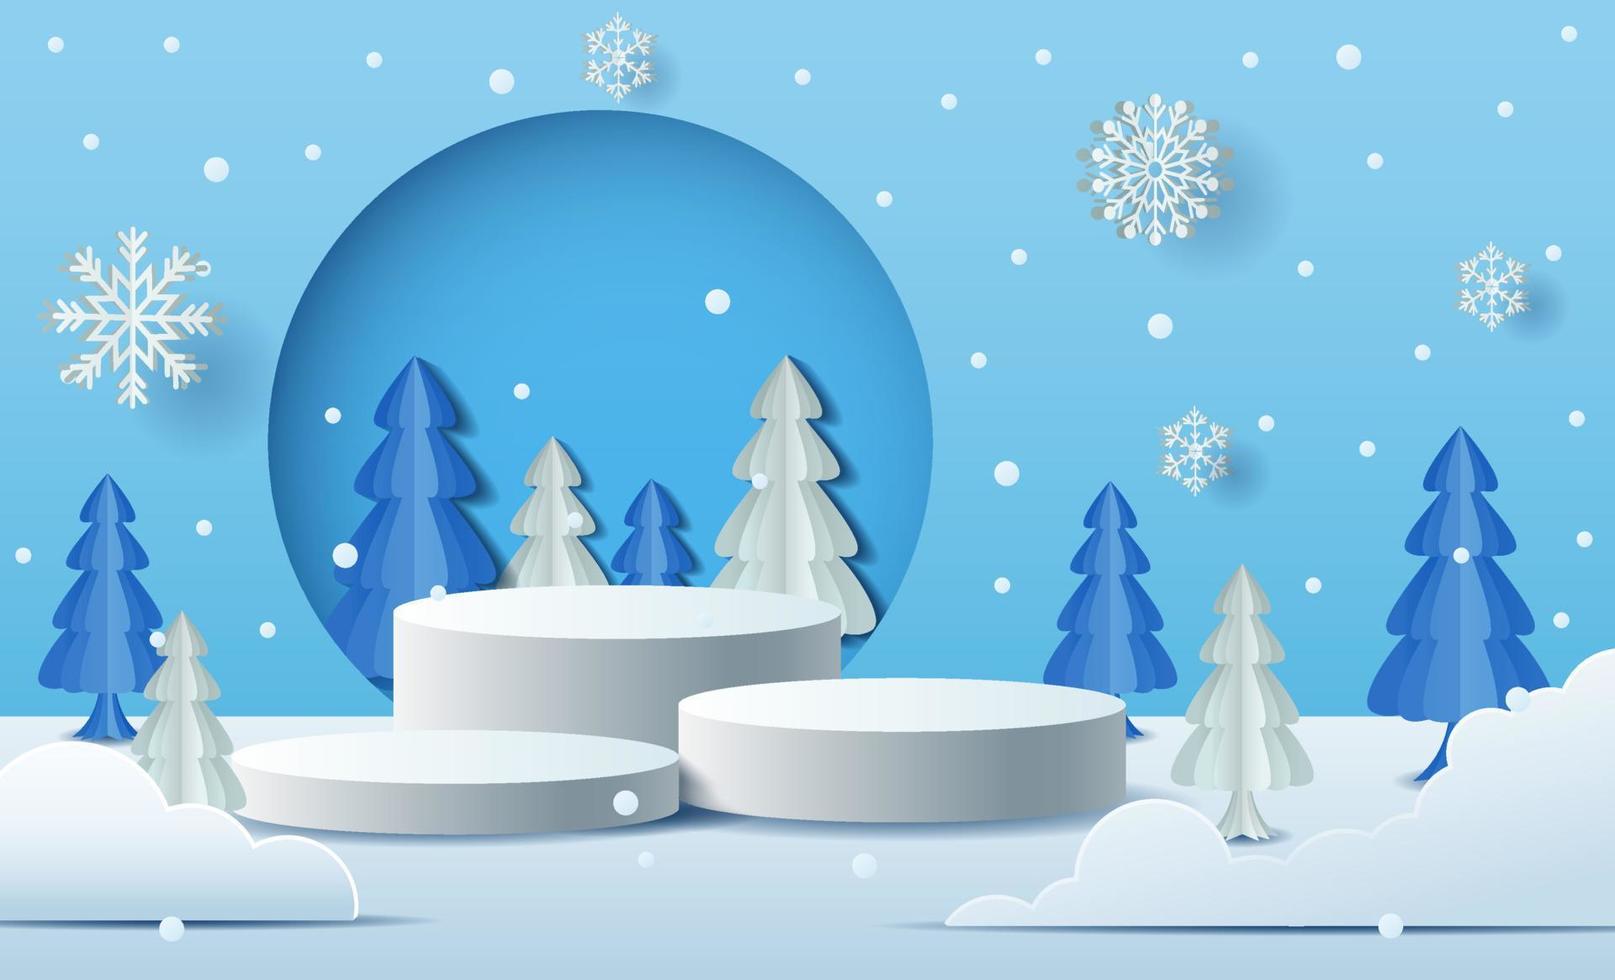 Natale inverno paesaggio con Prodotto podio scena. inverno vacanza piedistallo ghiaccio neve 3d interpretazione vettore sfondo con podio. vettore illustrazione